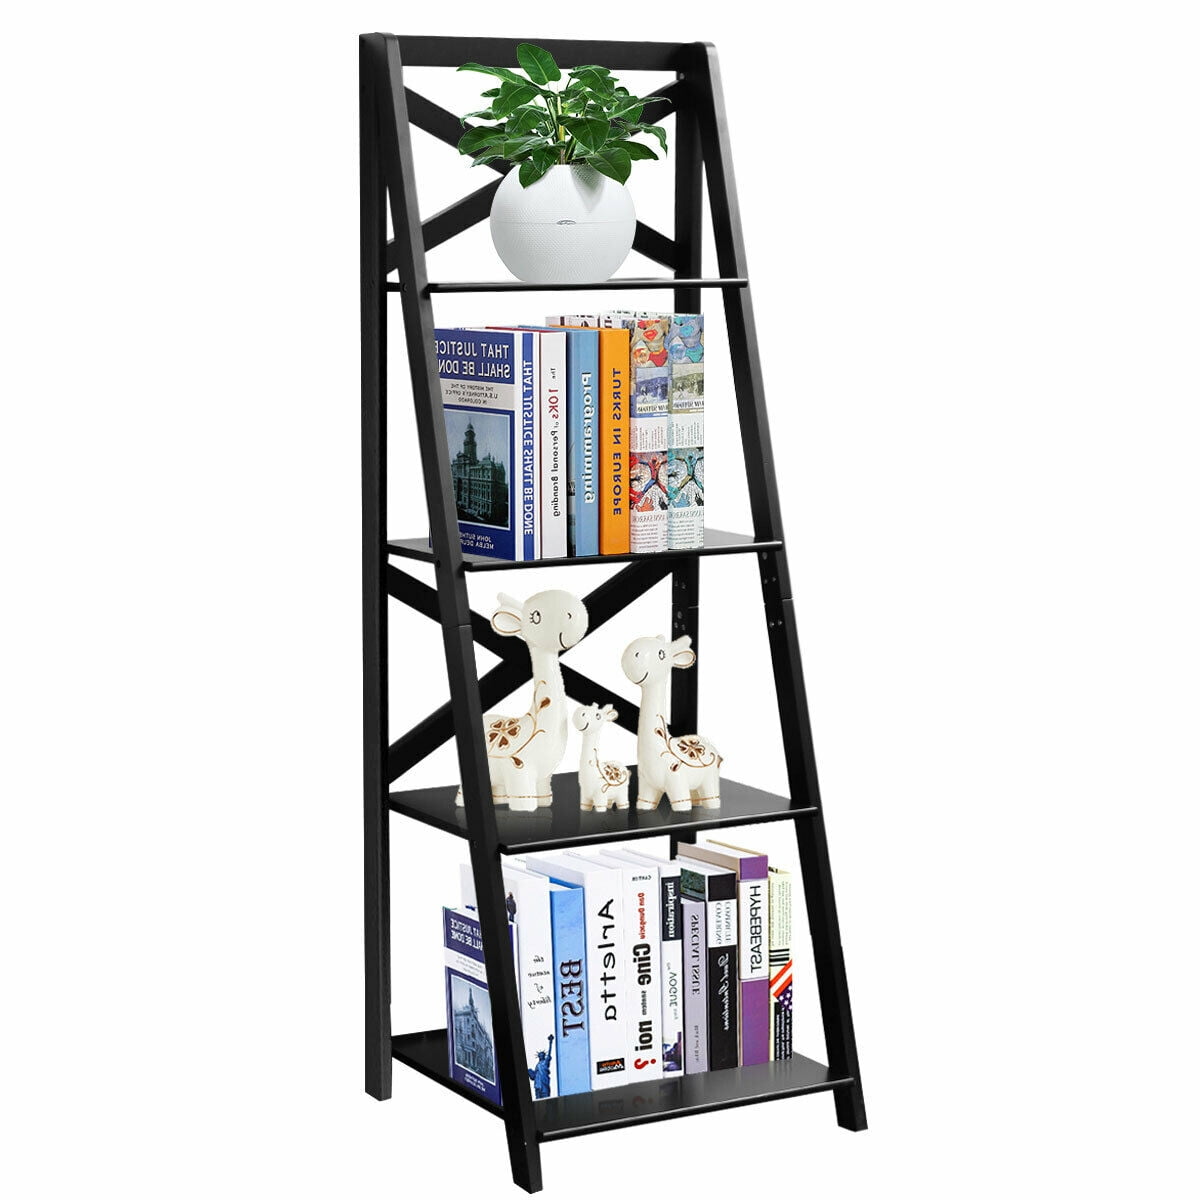 Bookshelf for Bedroom,Modern Bookshelf Bookshelf White Ladder Shelf,White Bookshelf 4 Tier Small Bookshelf,Ladder Shelf Bookcase,Tall Bookshelf,Leaning Bookshelf,Skinny Bookshelf